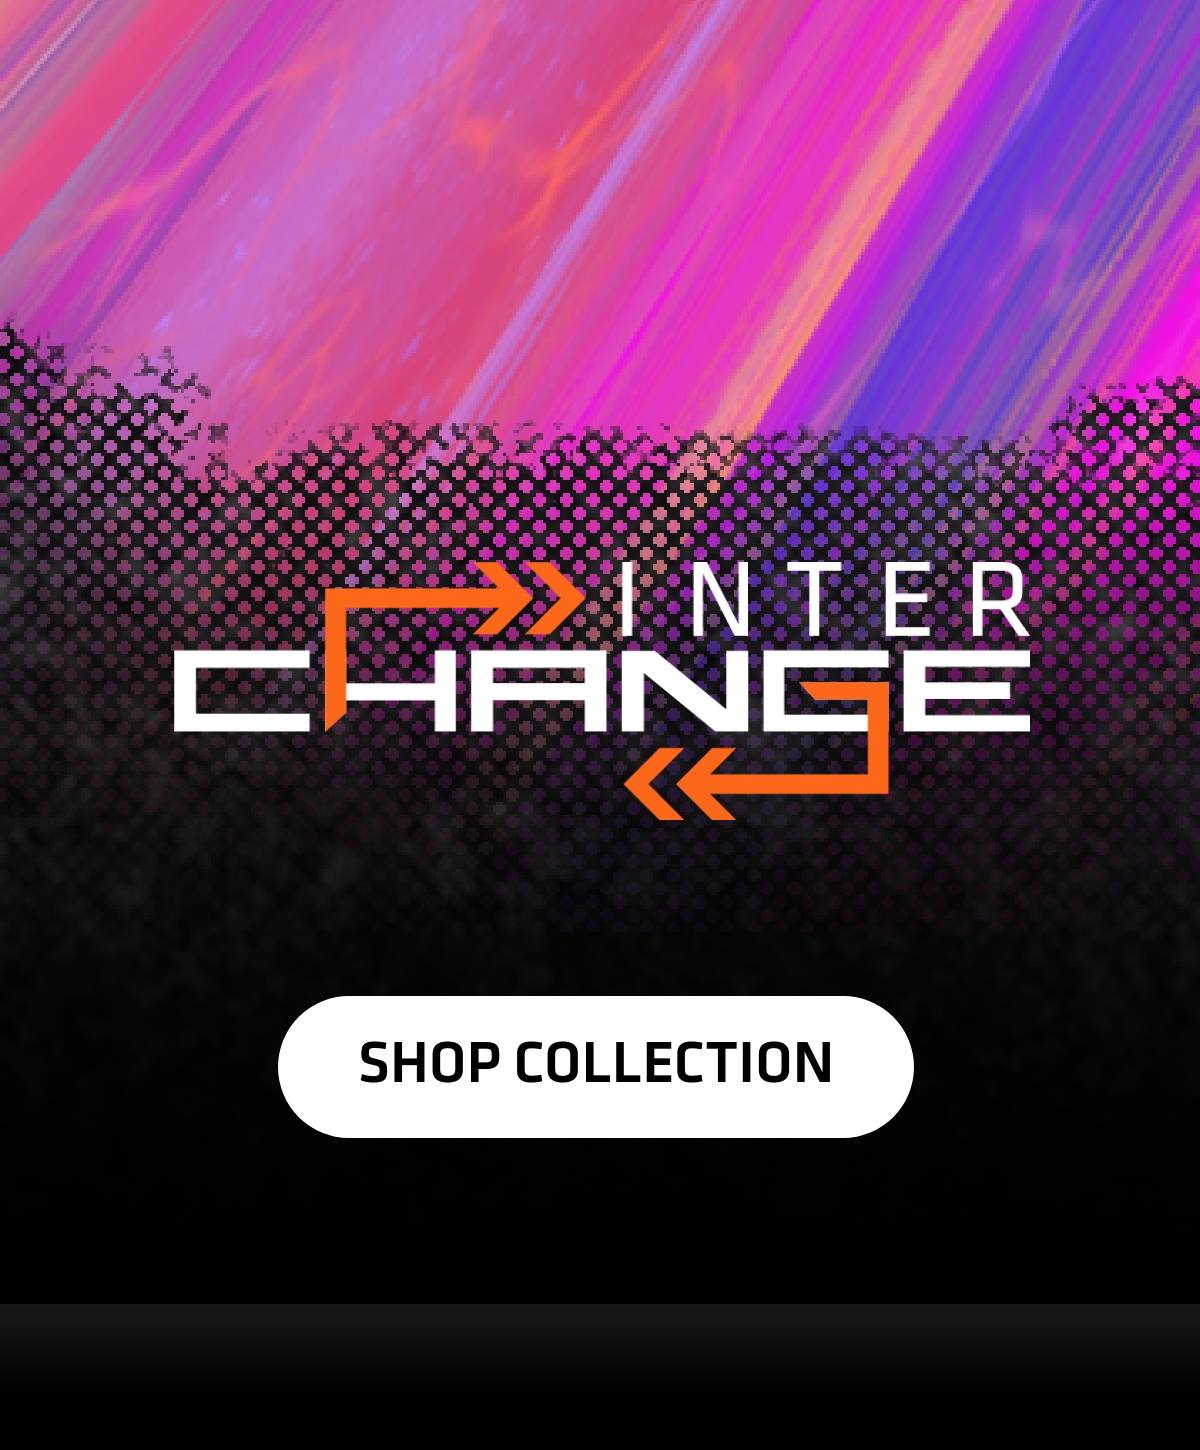 Interchange - Shop Collection